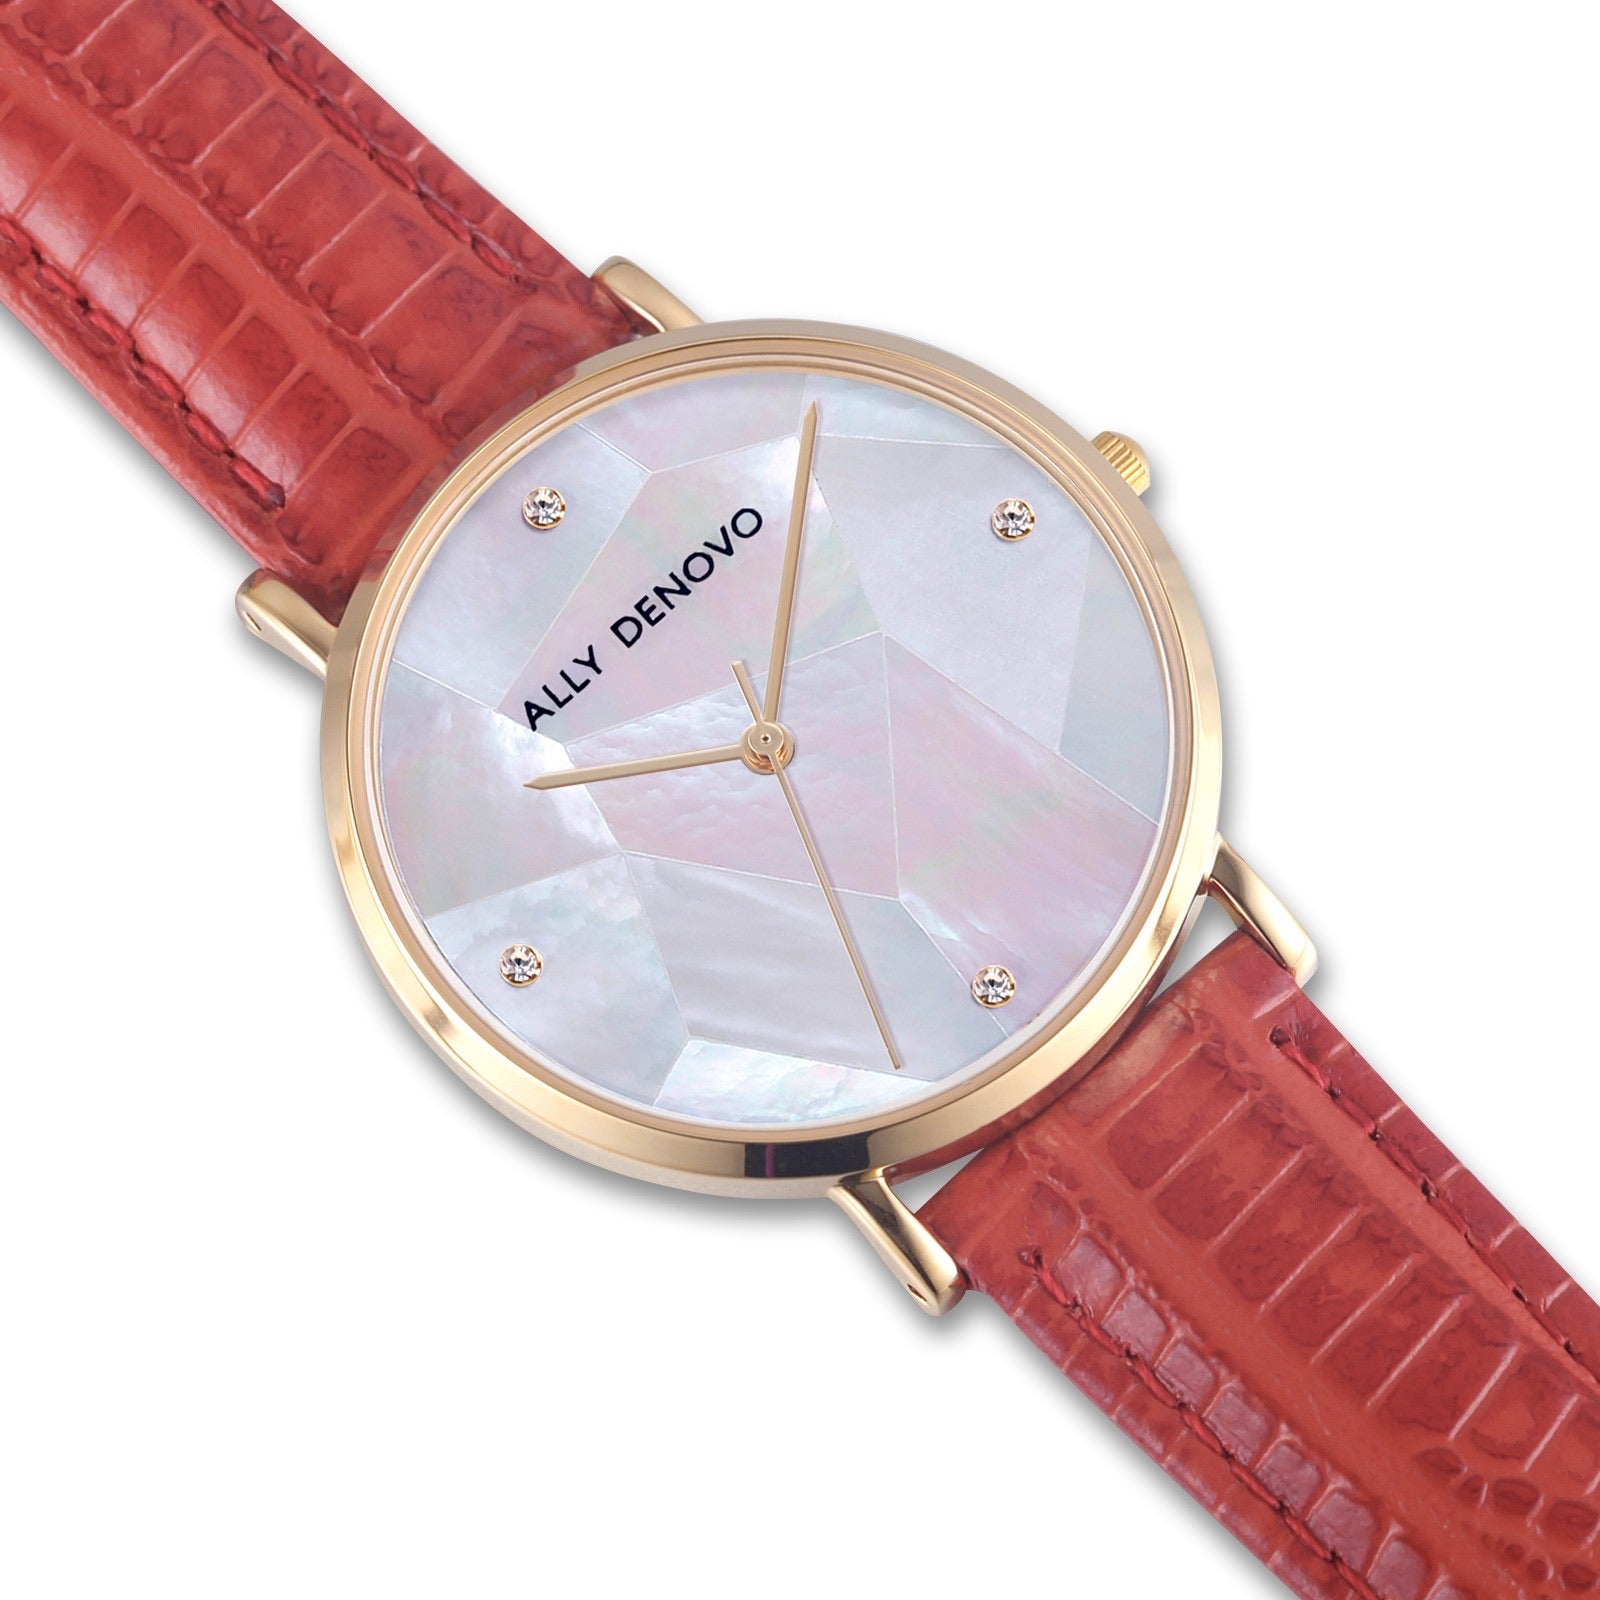 【新上市】Gaia pearl壓仿蛇紋皮革腕錶-白菱形琉璃金框紅色真皮錶帶